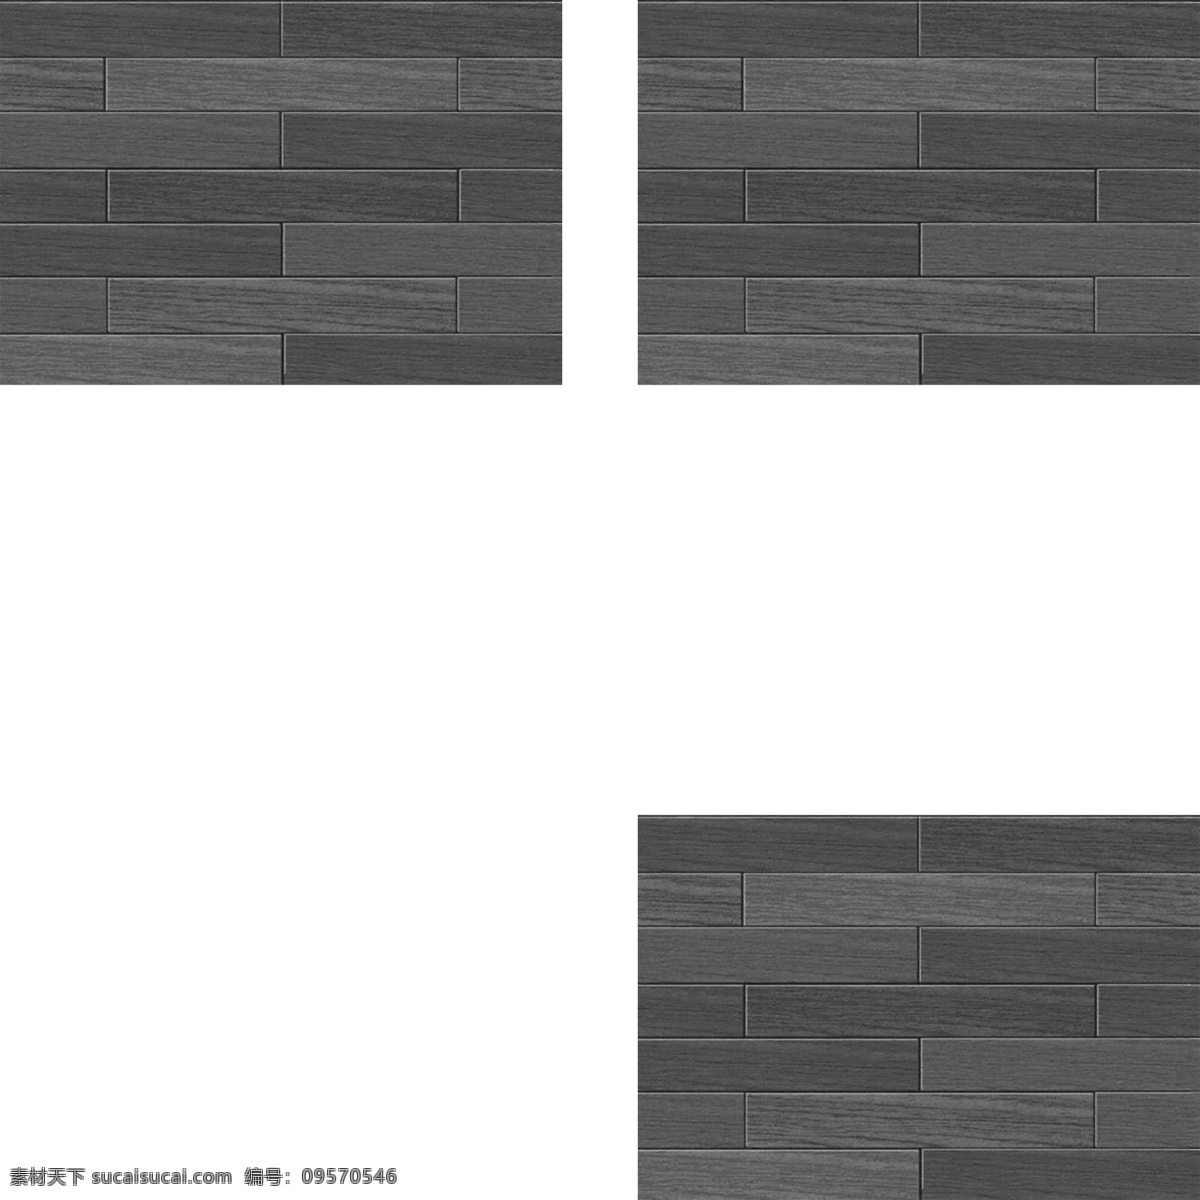 地板贴图5 地板贴图 地板效果图 装修效果图 地板设计素材 地板素材 建材 建筑 平面图 室内地板 装饰平面图材 白色